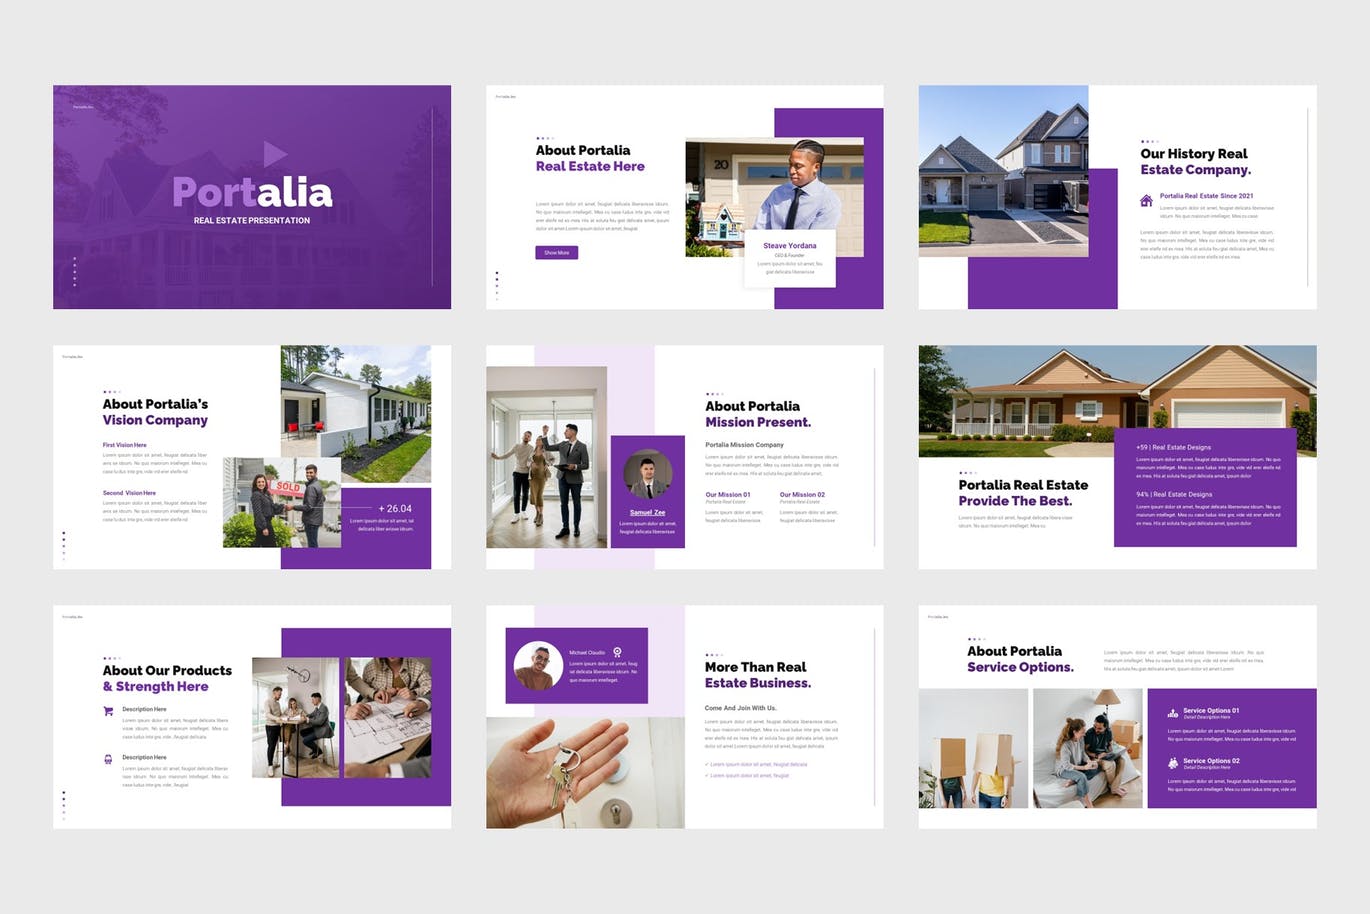 房地产业务Powerpoint模板下载 Portalia – Real Estate PowerPoint Template 幻灯图表 第4张